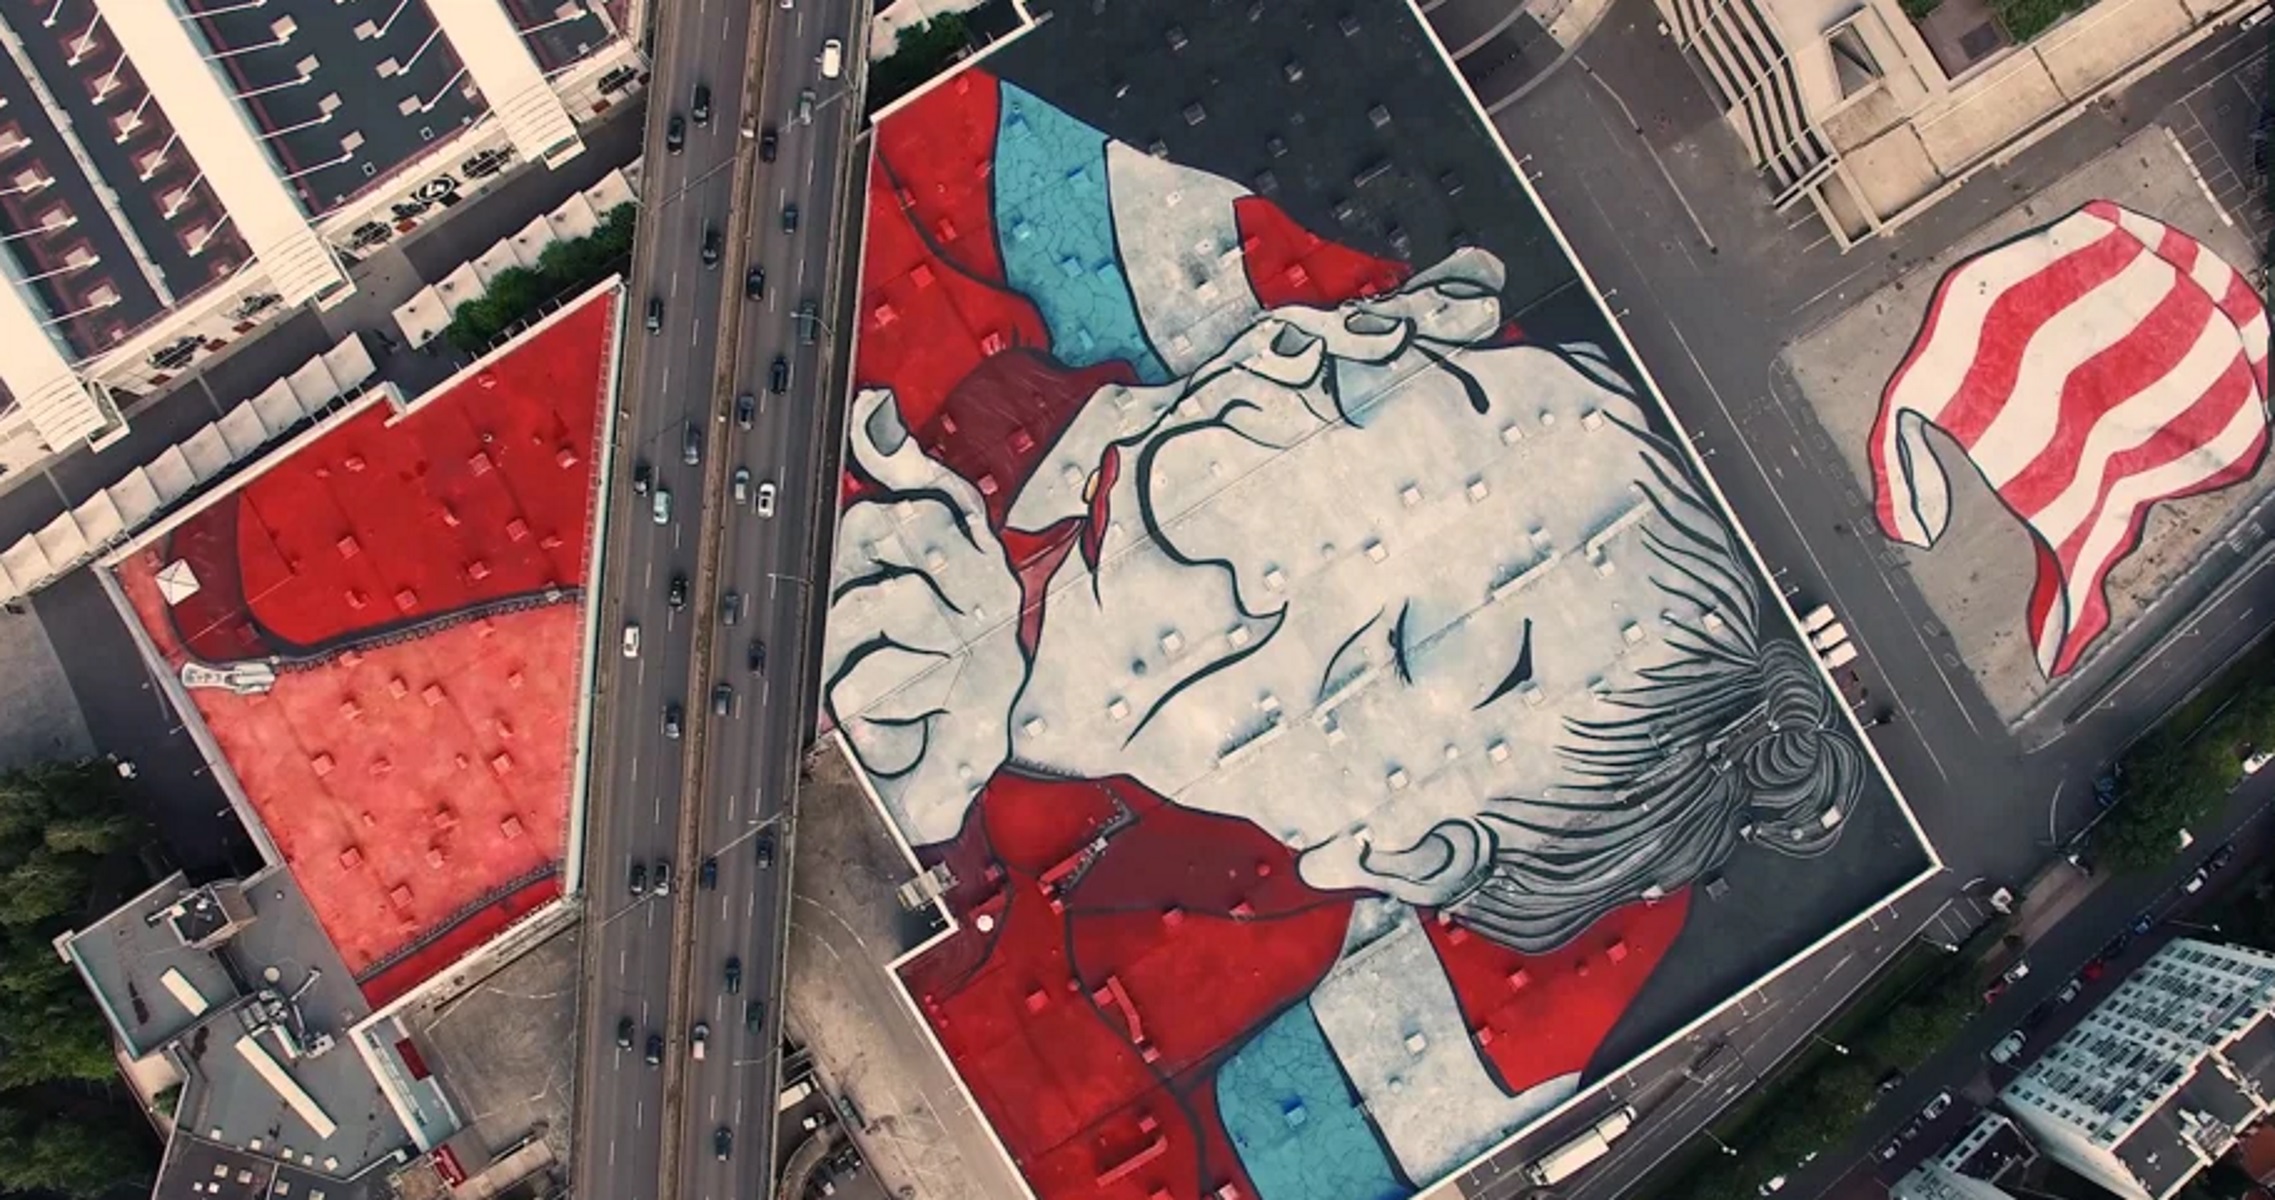 Αυτό είναι το μεγαλύτερο street art έργο στον κόσμο! [Pics]